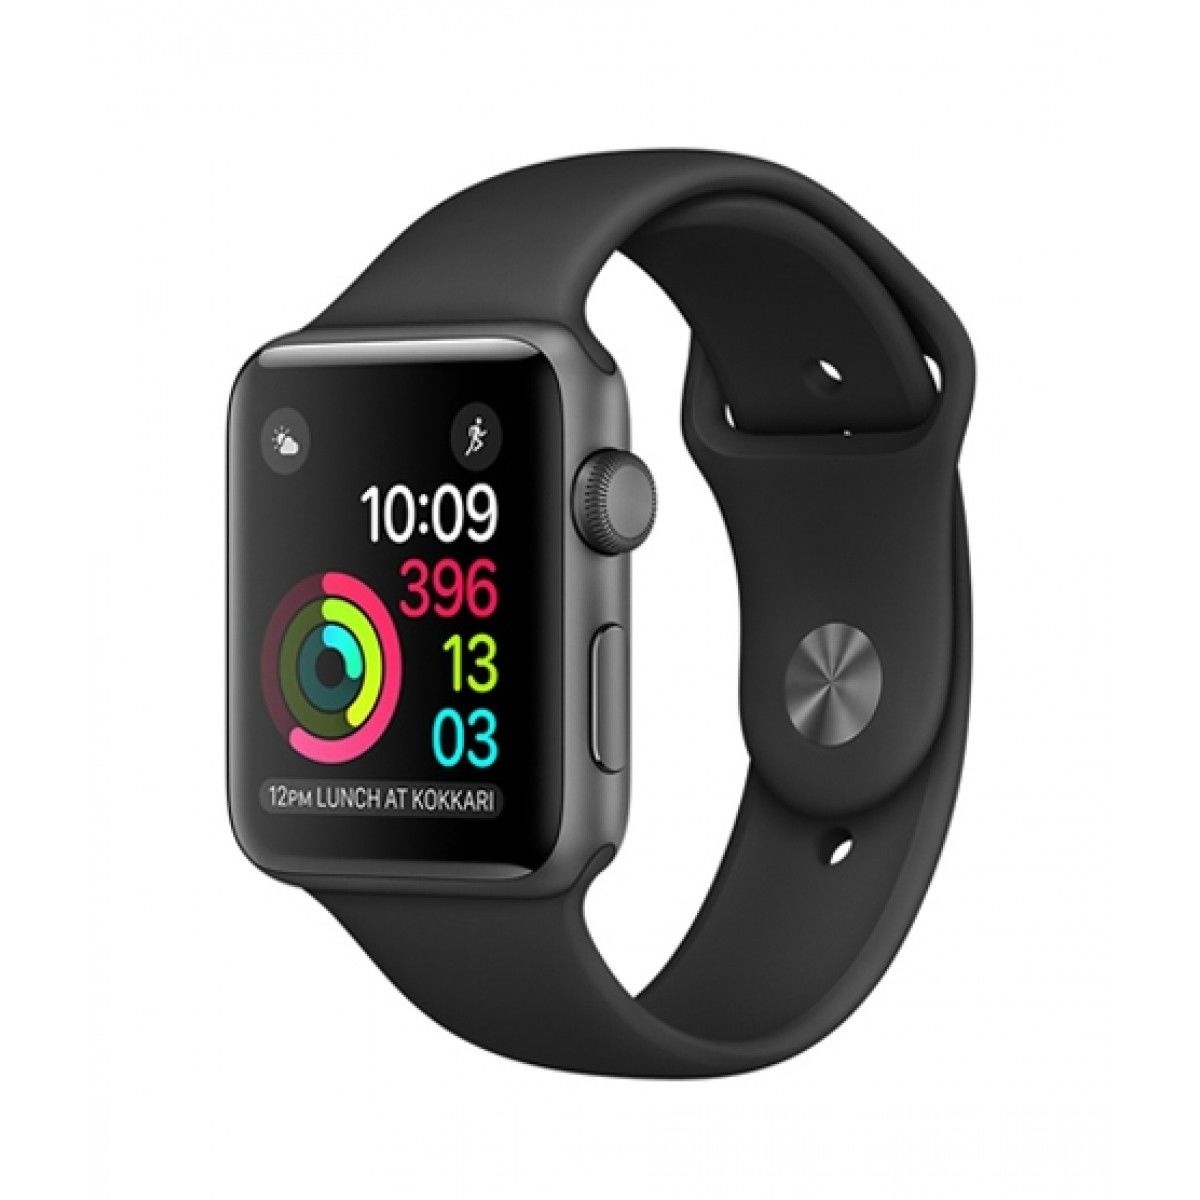 Bandje nodig voor de Apple Watch Series 1?